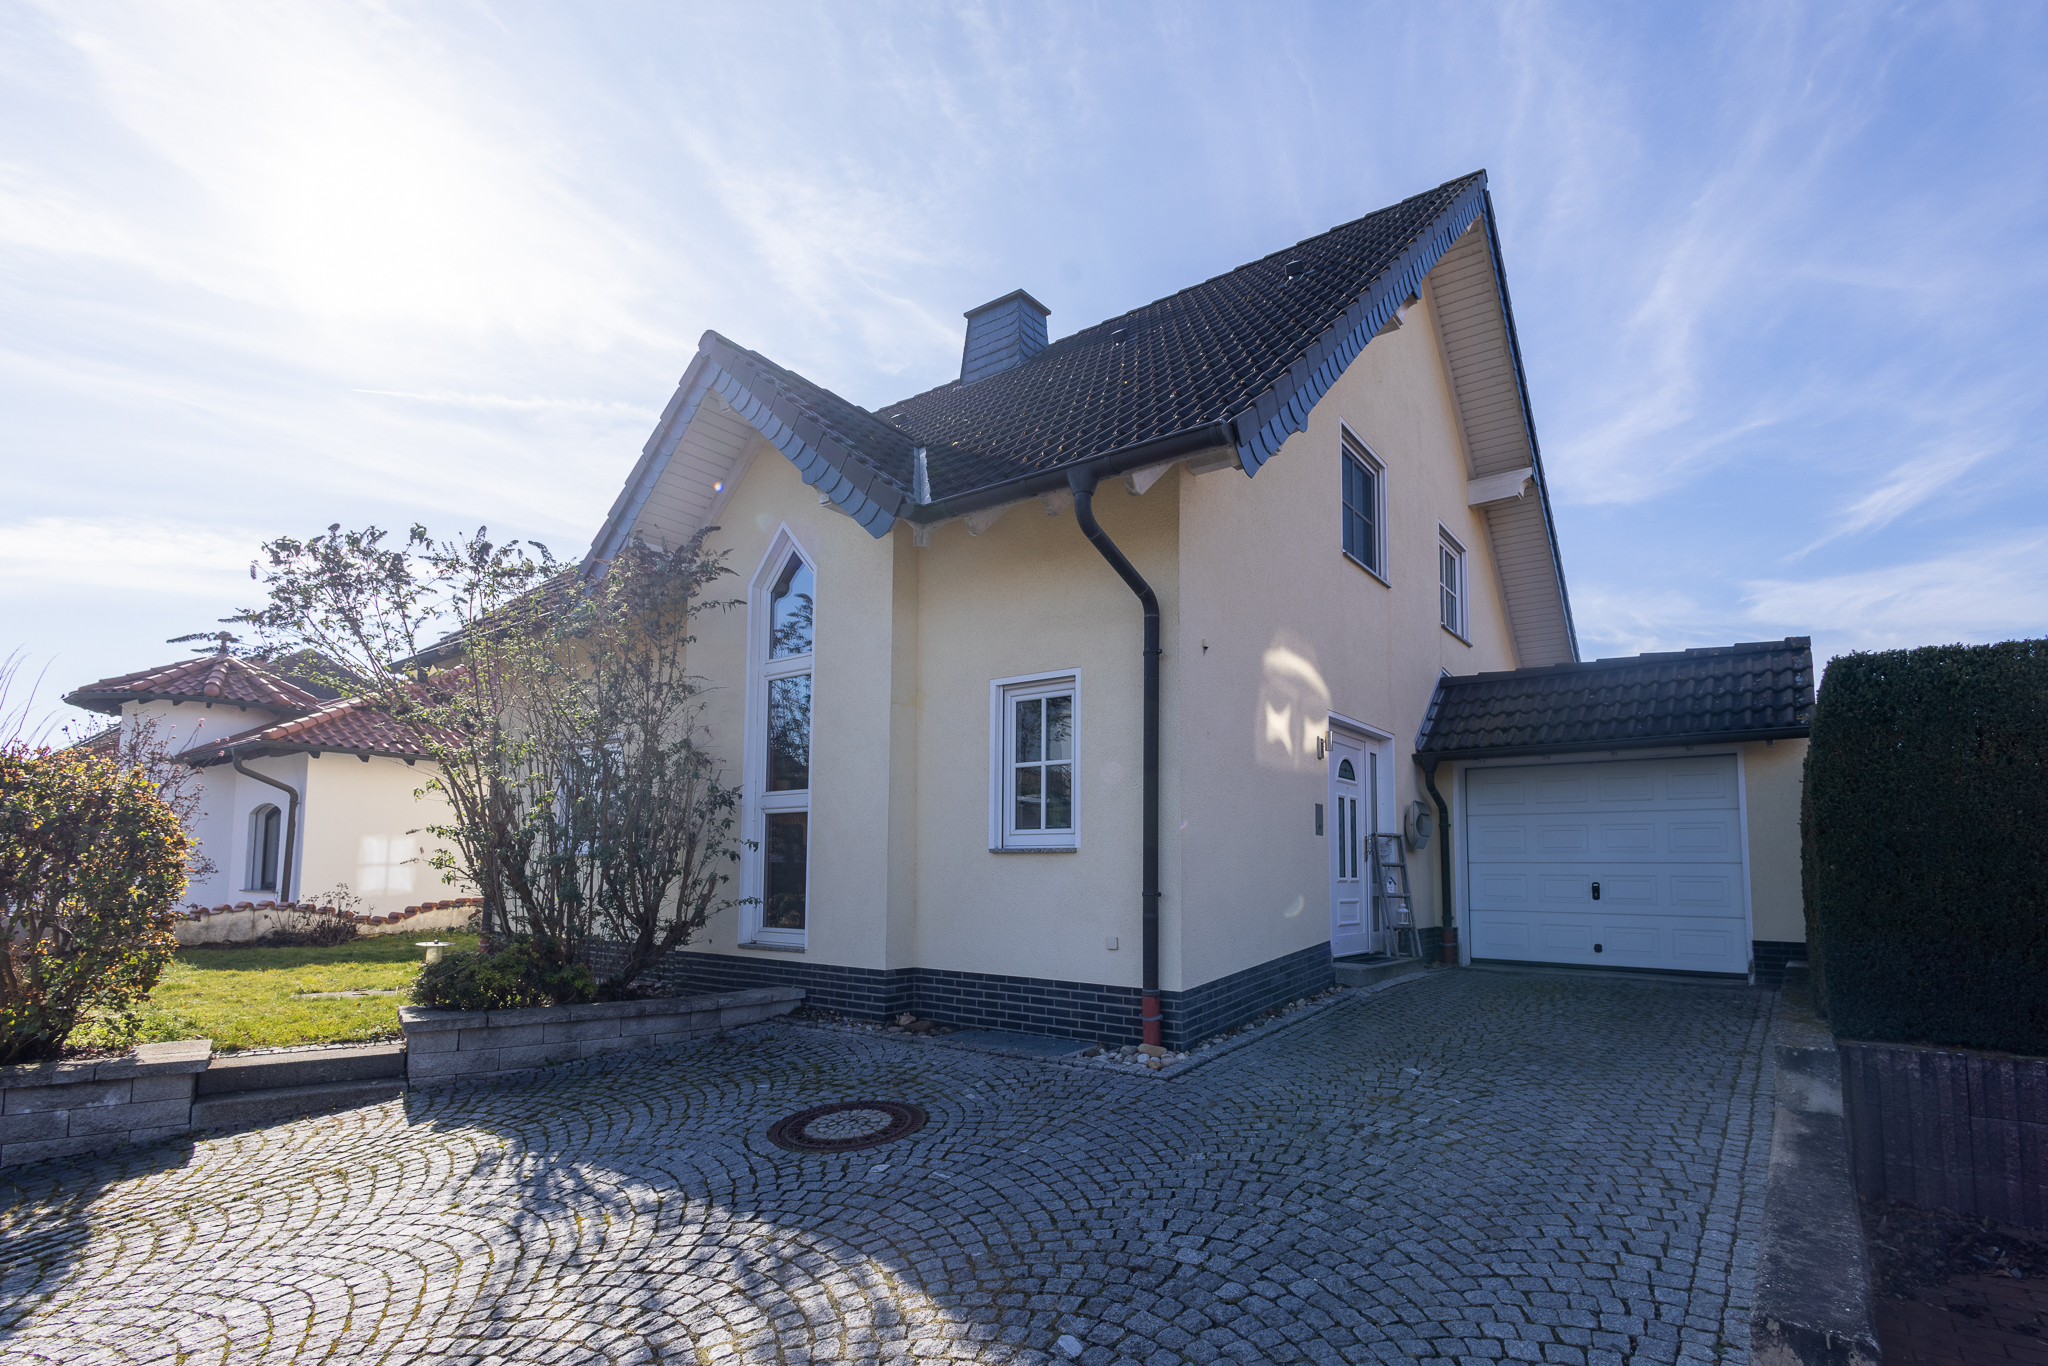 Seitliche Außenansicht der Immobilie in Oberlützingen. Gepflasterte Einfahrt, Garage und Vorgarten sind zu sehen